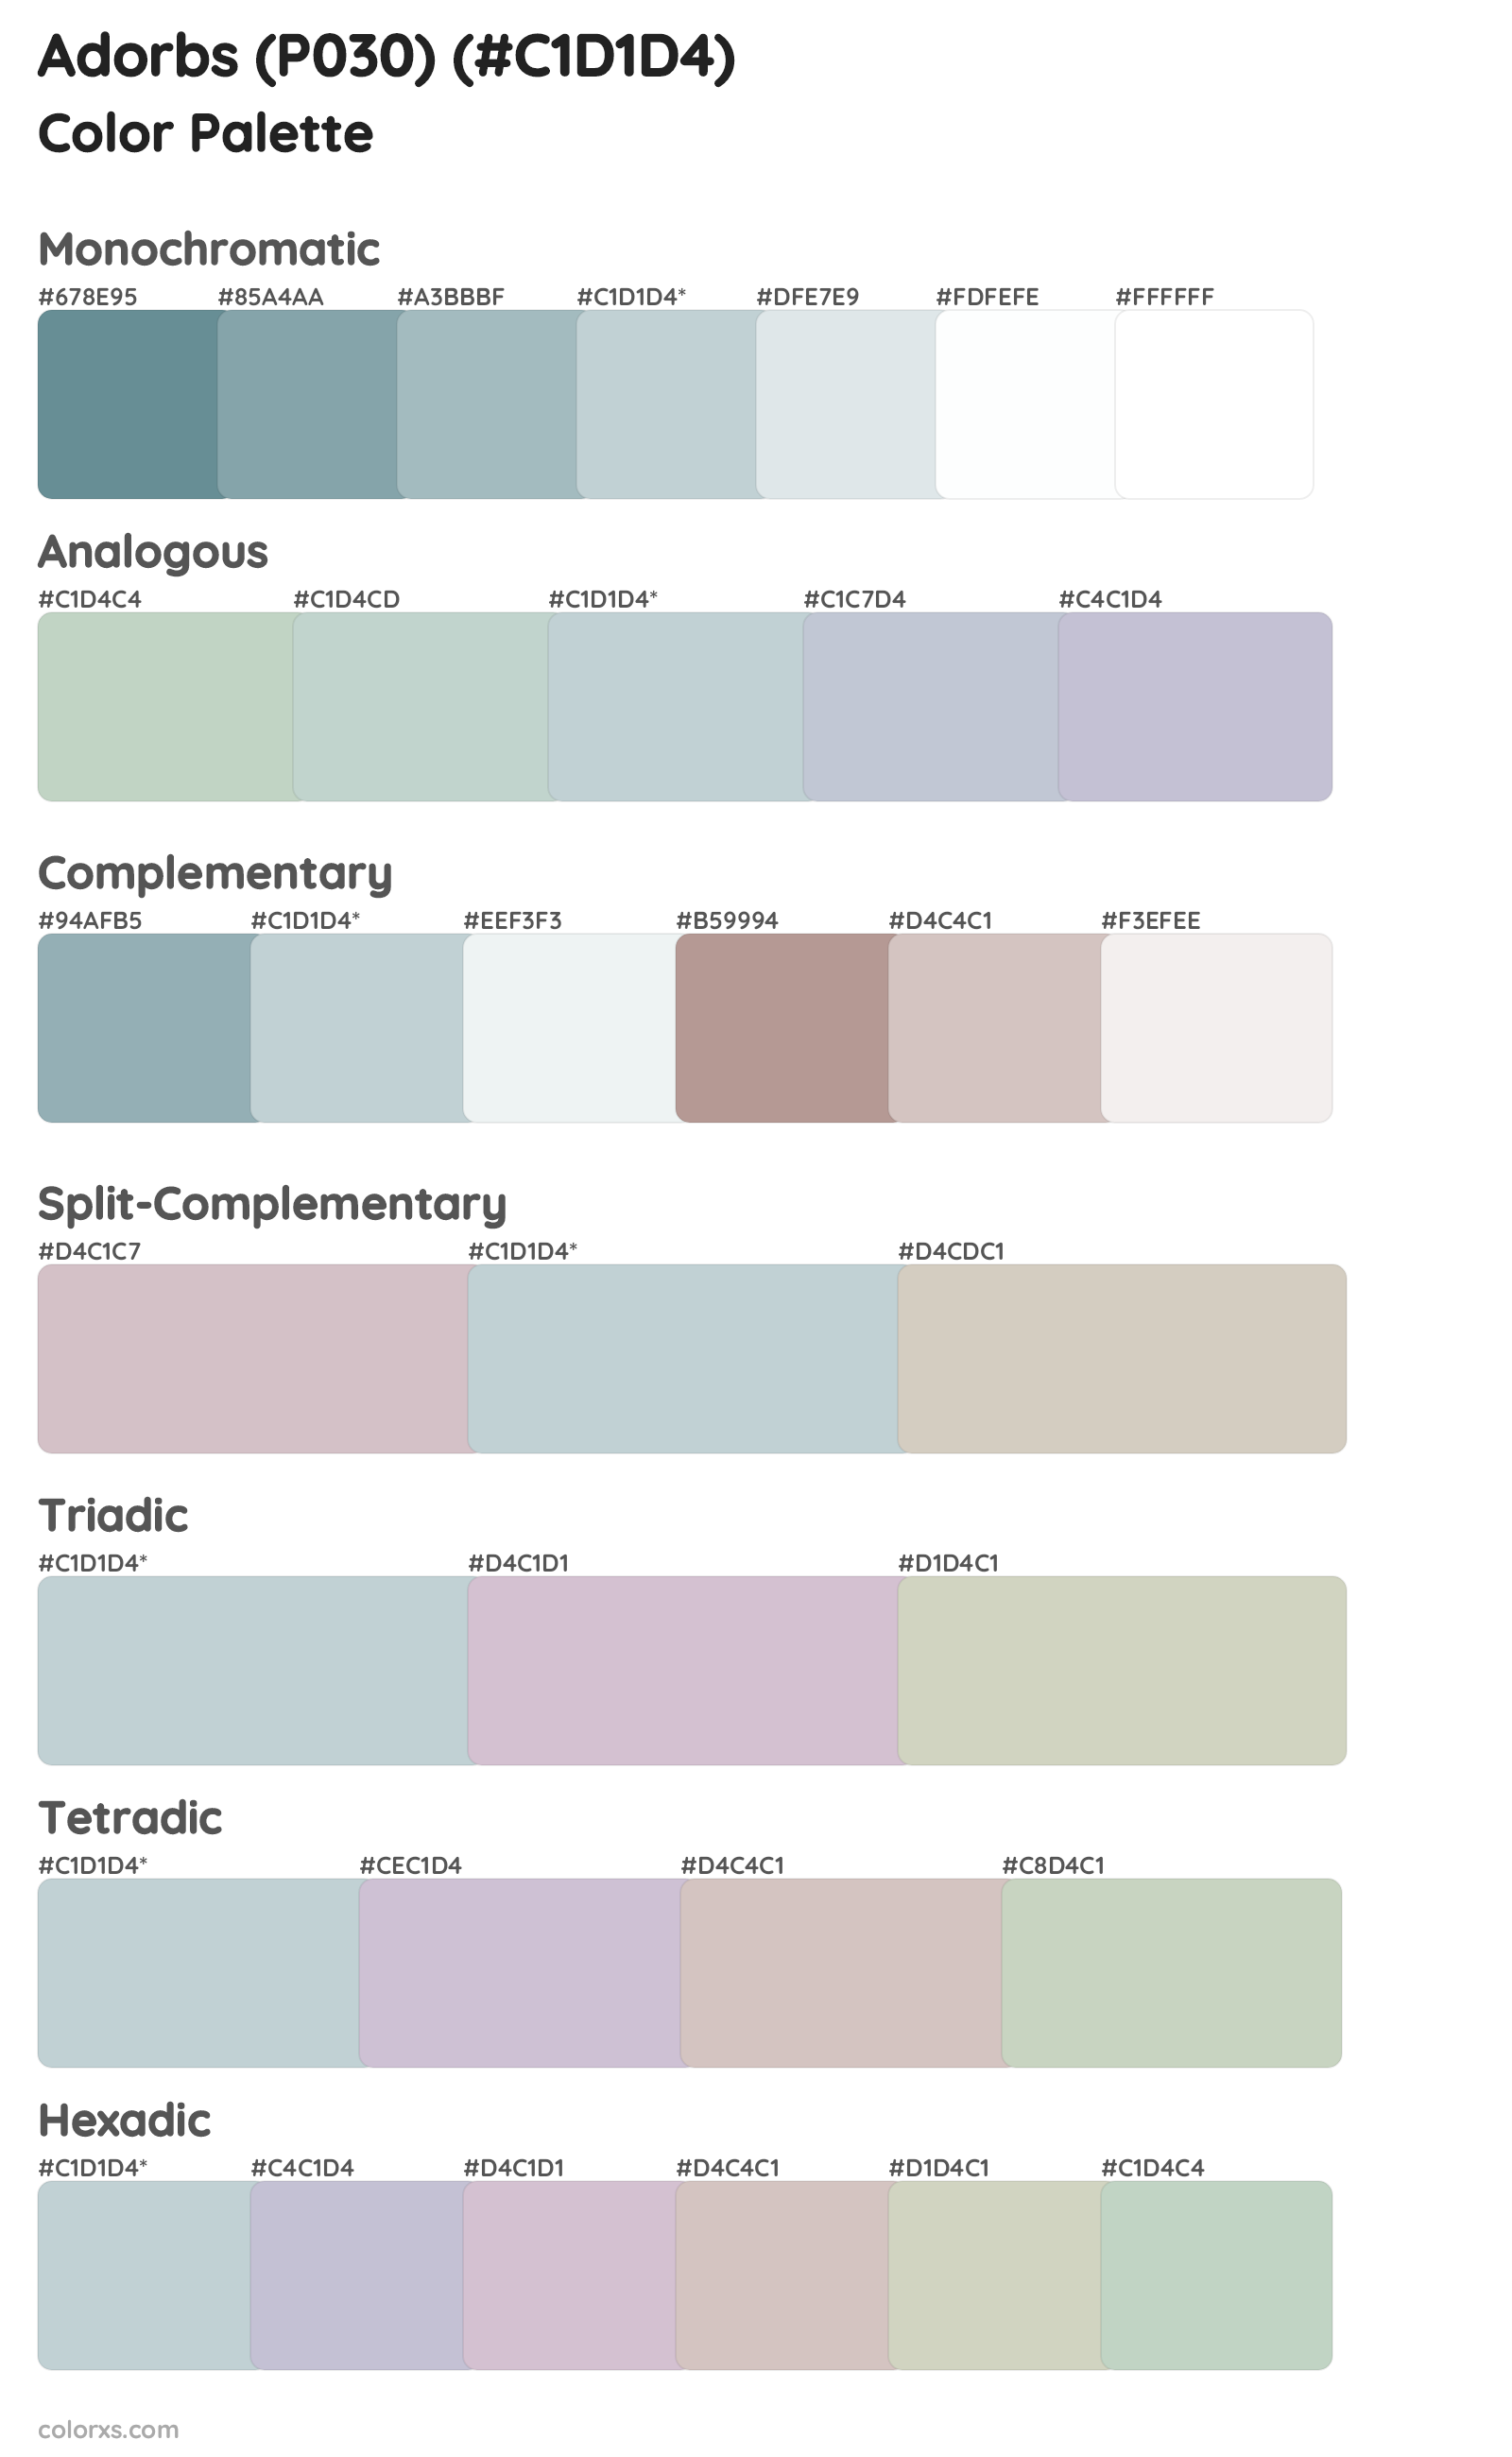 Adorbs (P030) Color Scheme Palettes